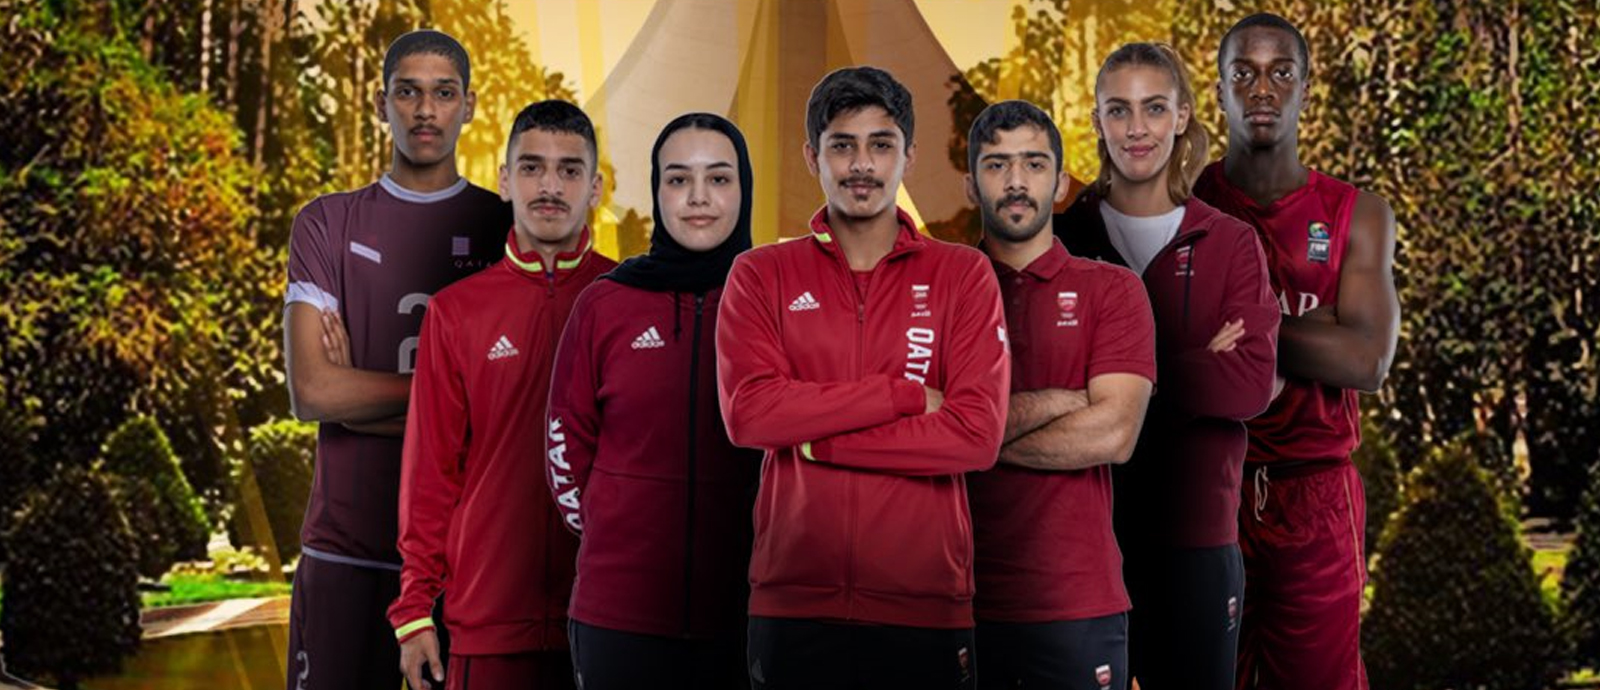 دولة قطر تشارك بـ 104 لاعبين ولاعبات في دورة الألعاب العربية